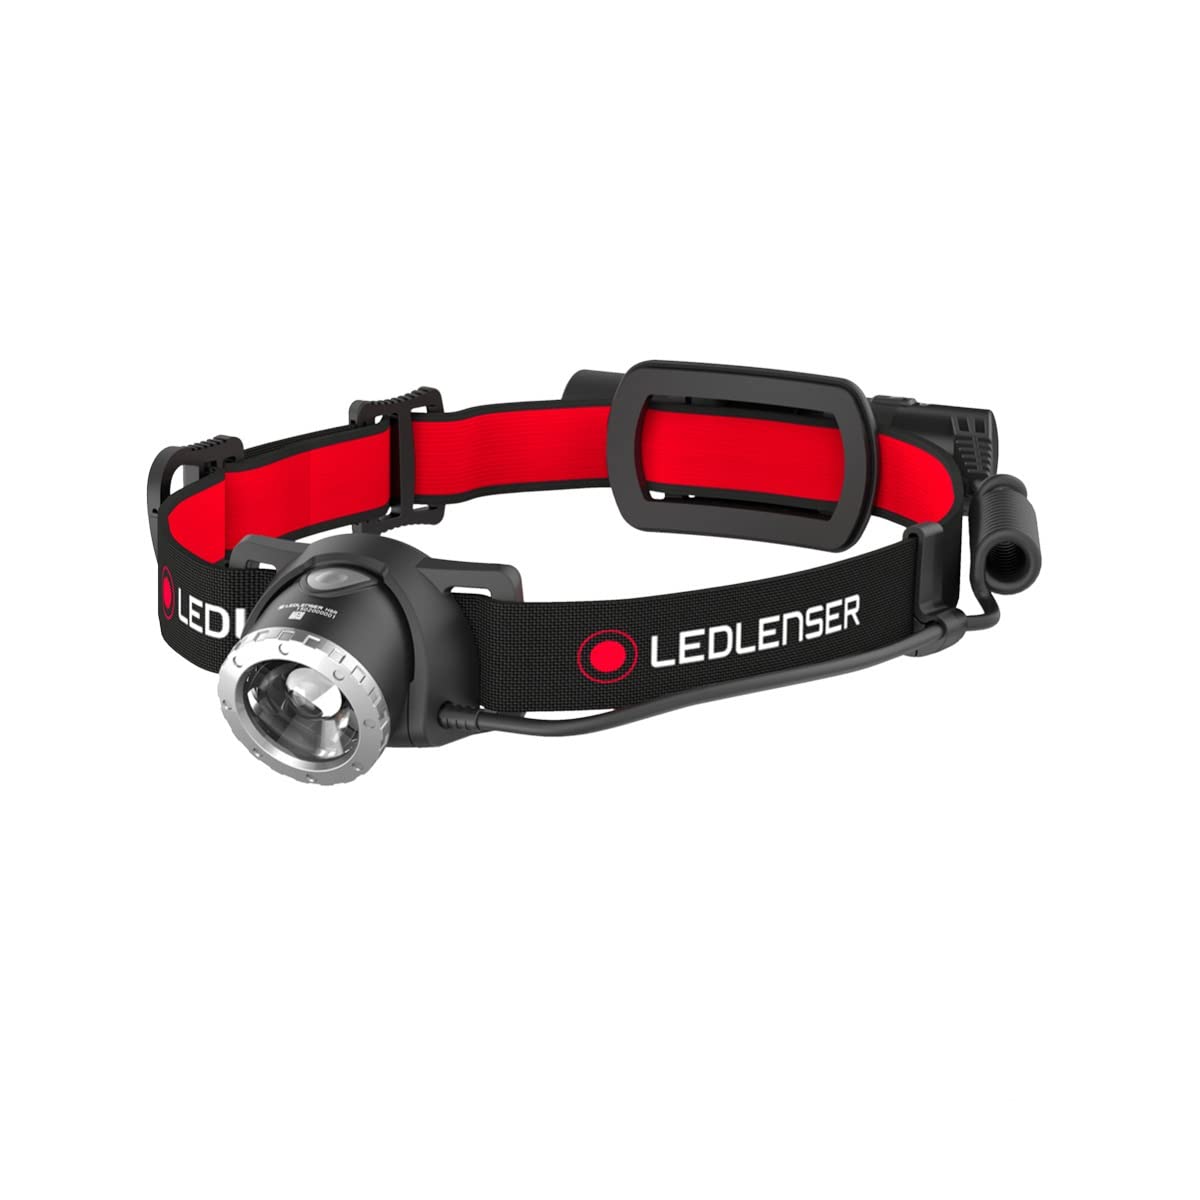 Ledlenser H8R, LED Stirnlampe, 600 Lumen, bis zu 120h Laufzeit, rotes Rücklicht, inkl. Akku, aufladbar, Box-Verpackung von Ledlenser